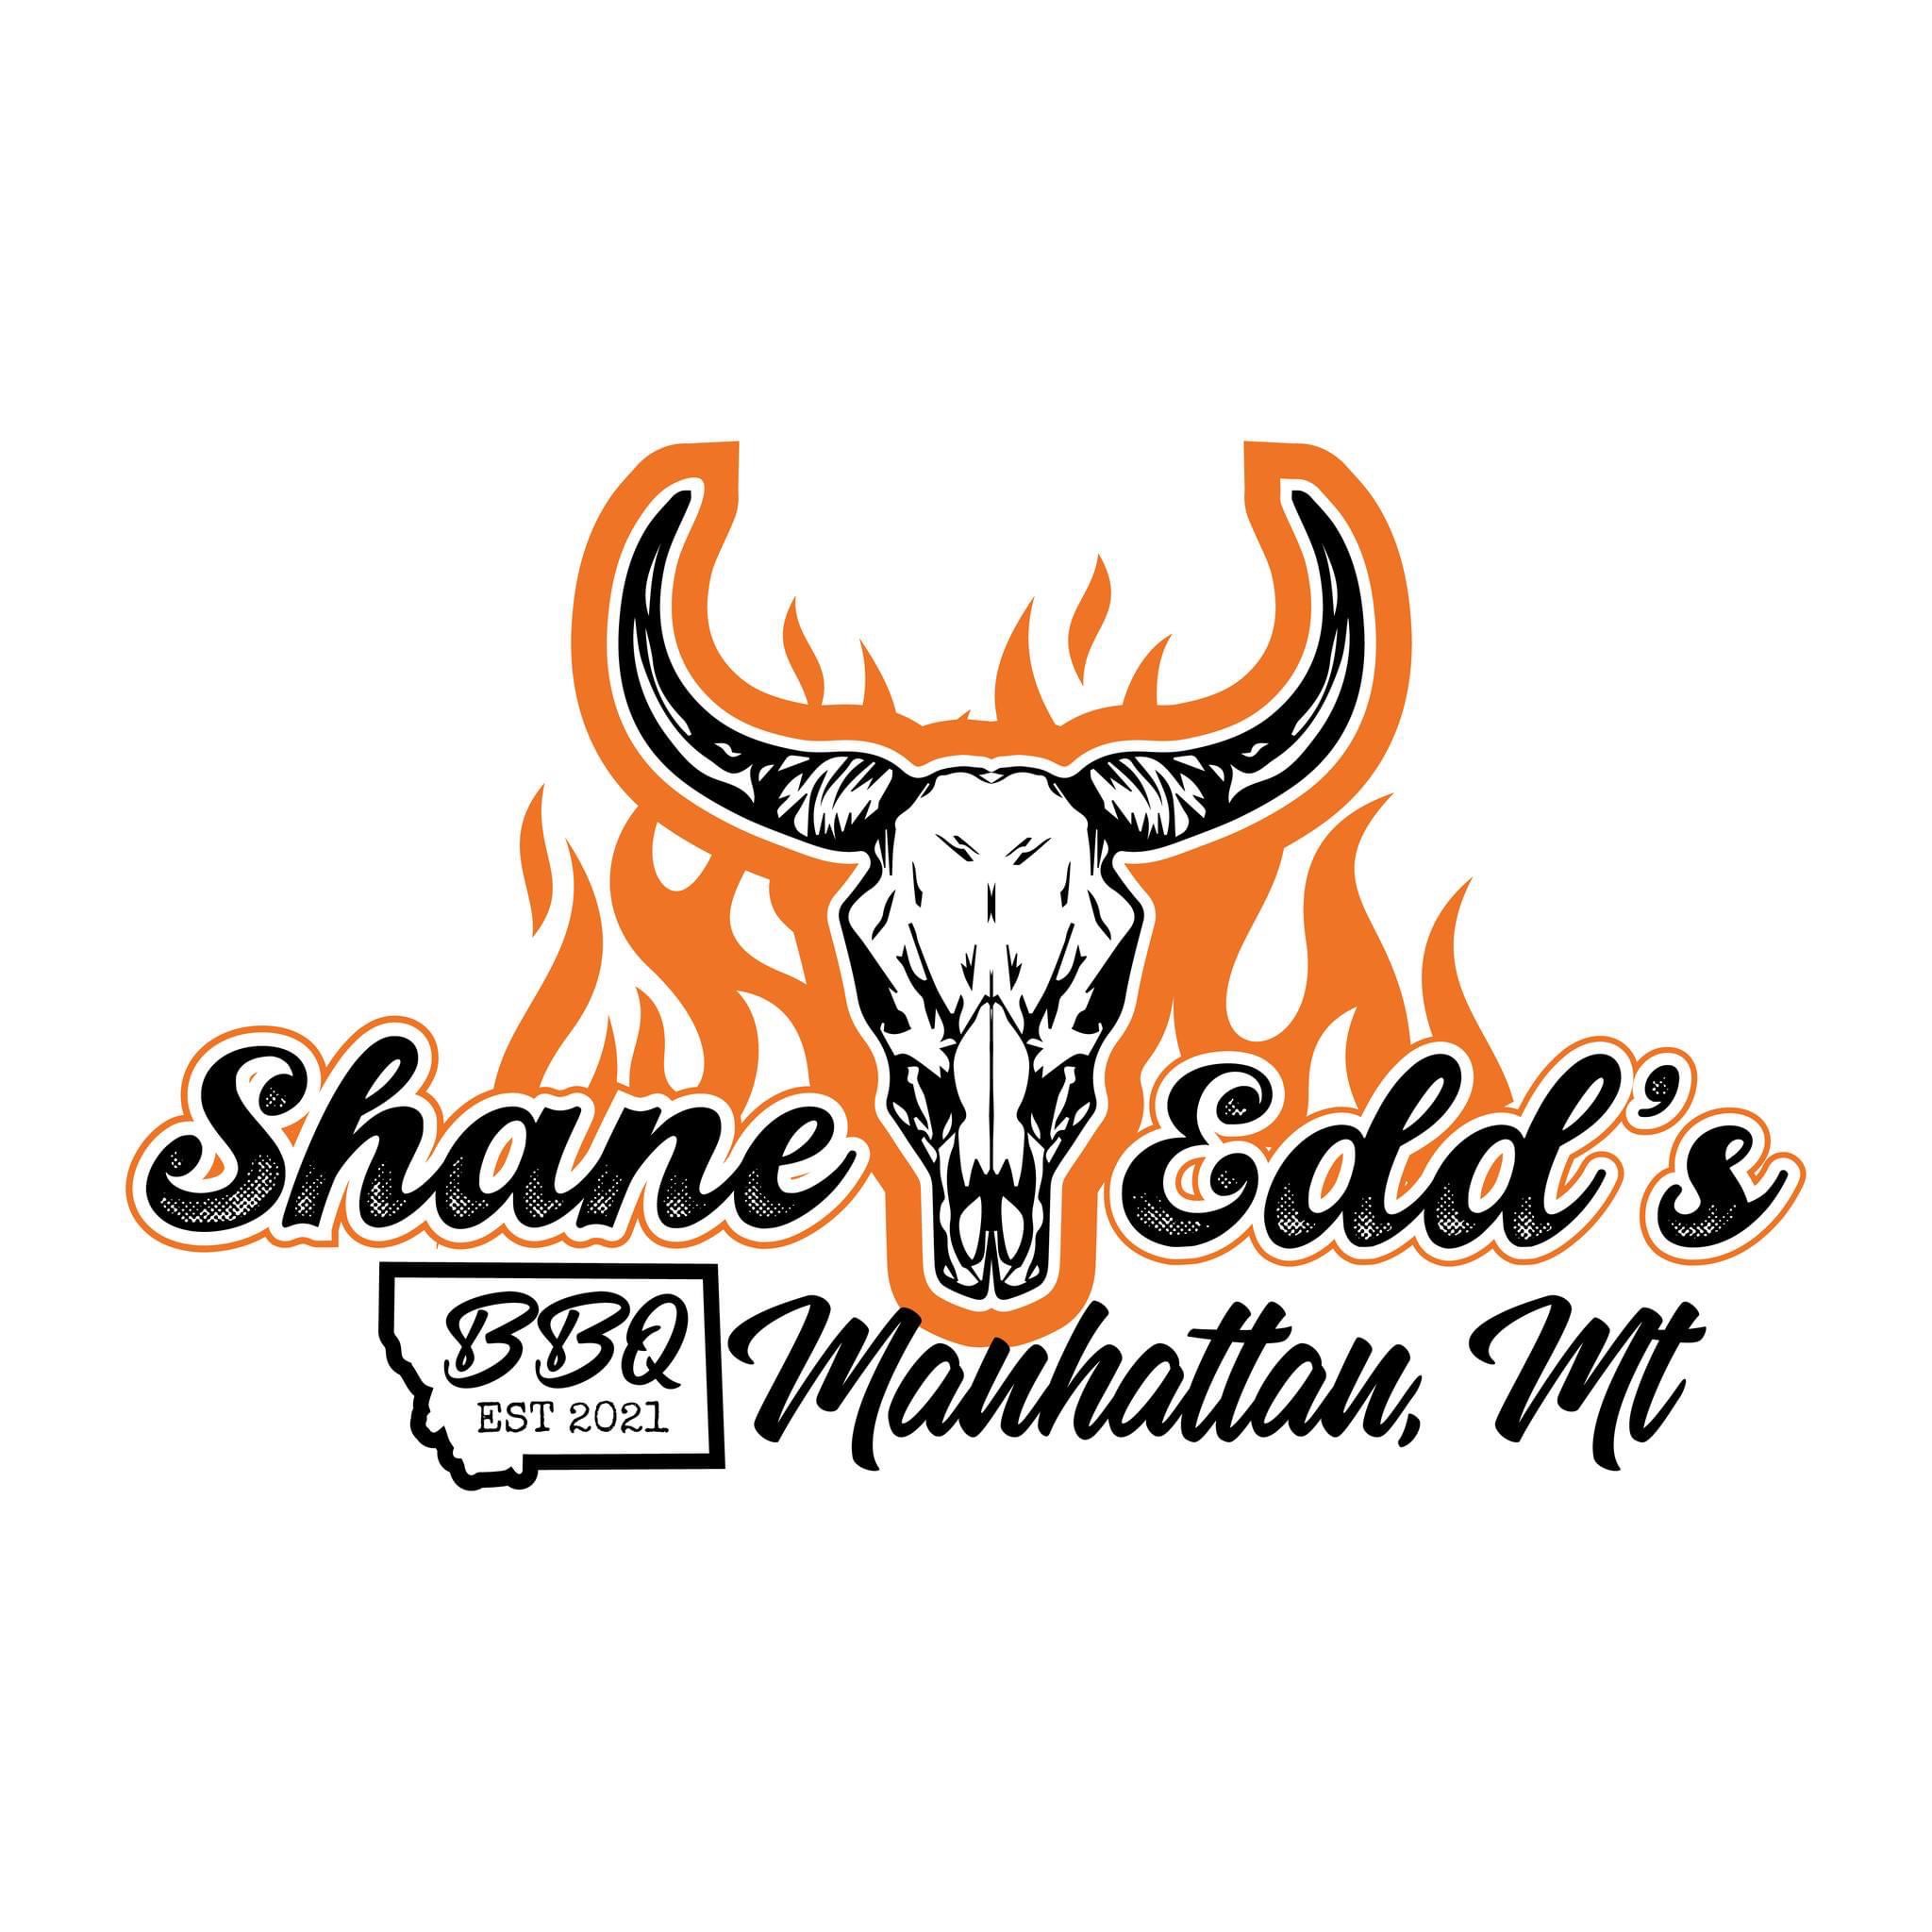 Shane Edd's BBQ